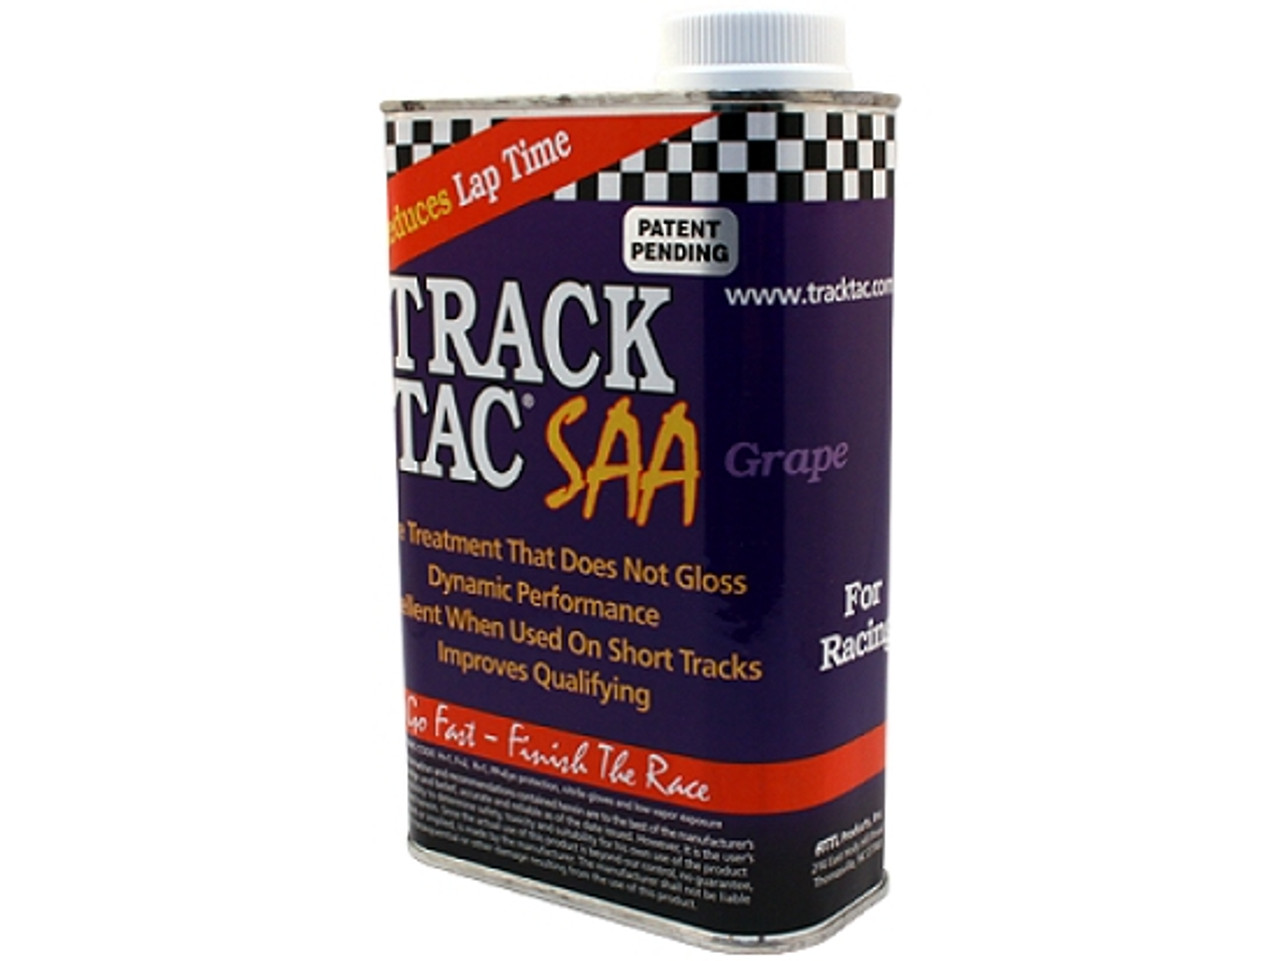 TRACK TAC SAA-GRAPE QT